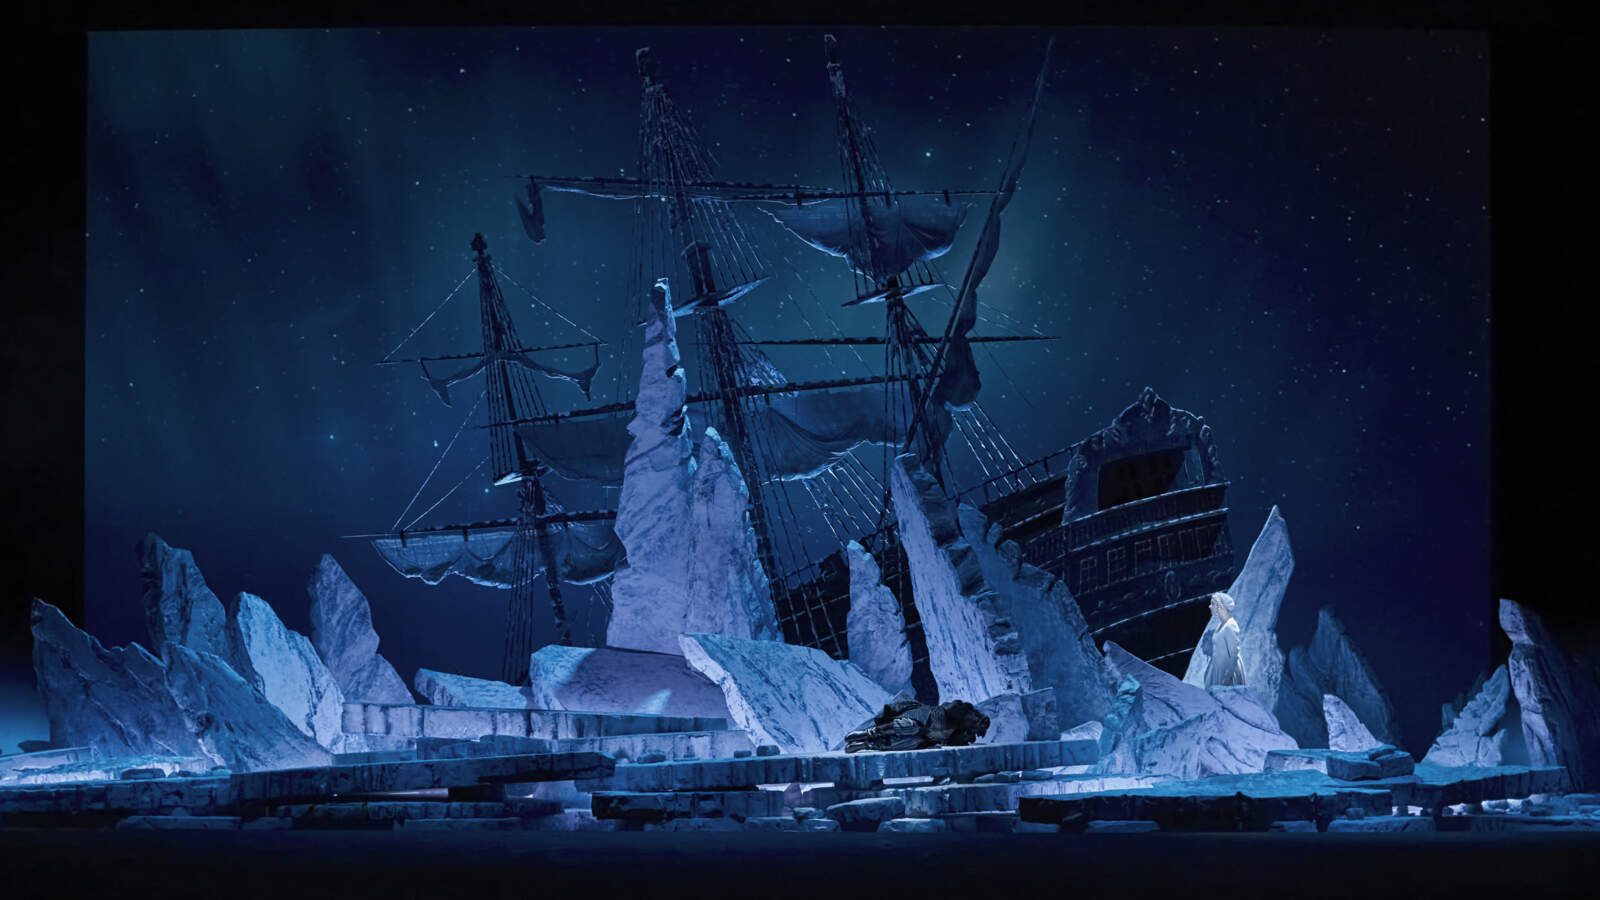 Ett stort segelfartyg står fastbunden bland isflak som pekar i olika riktningar. Någon ligger på isen i fosterställning.